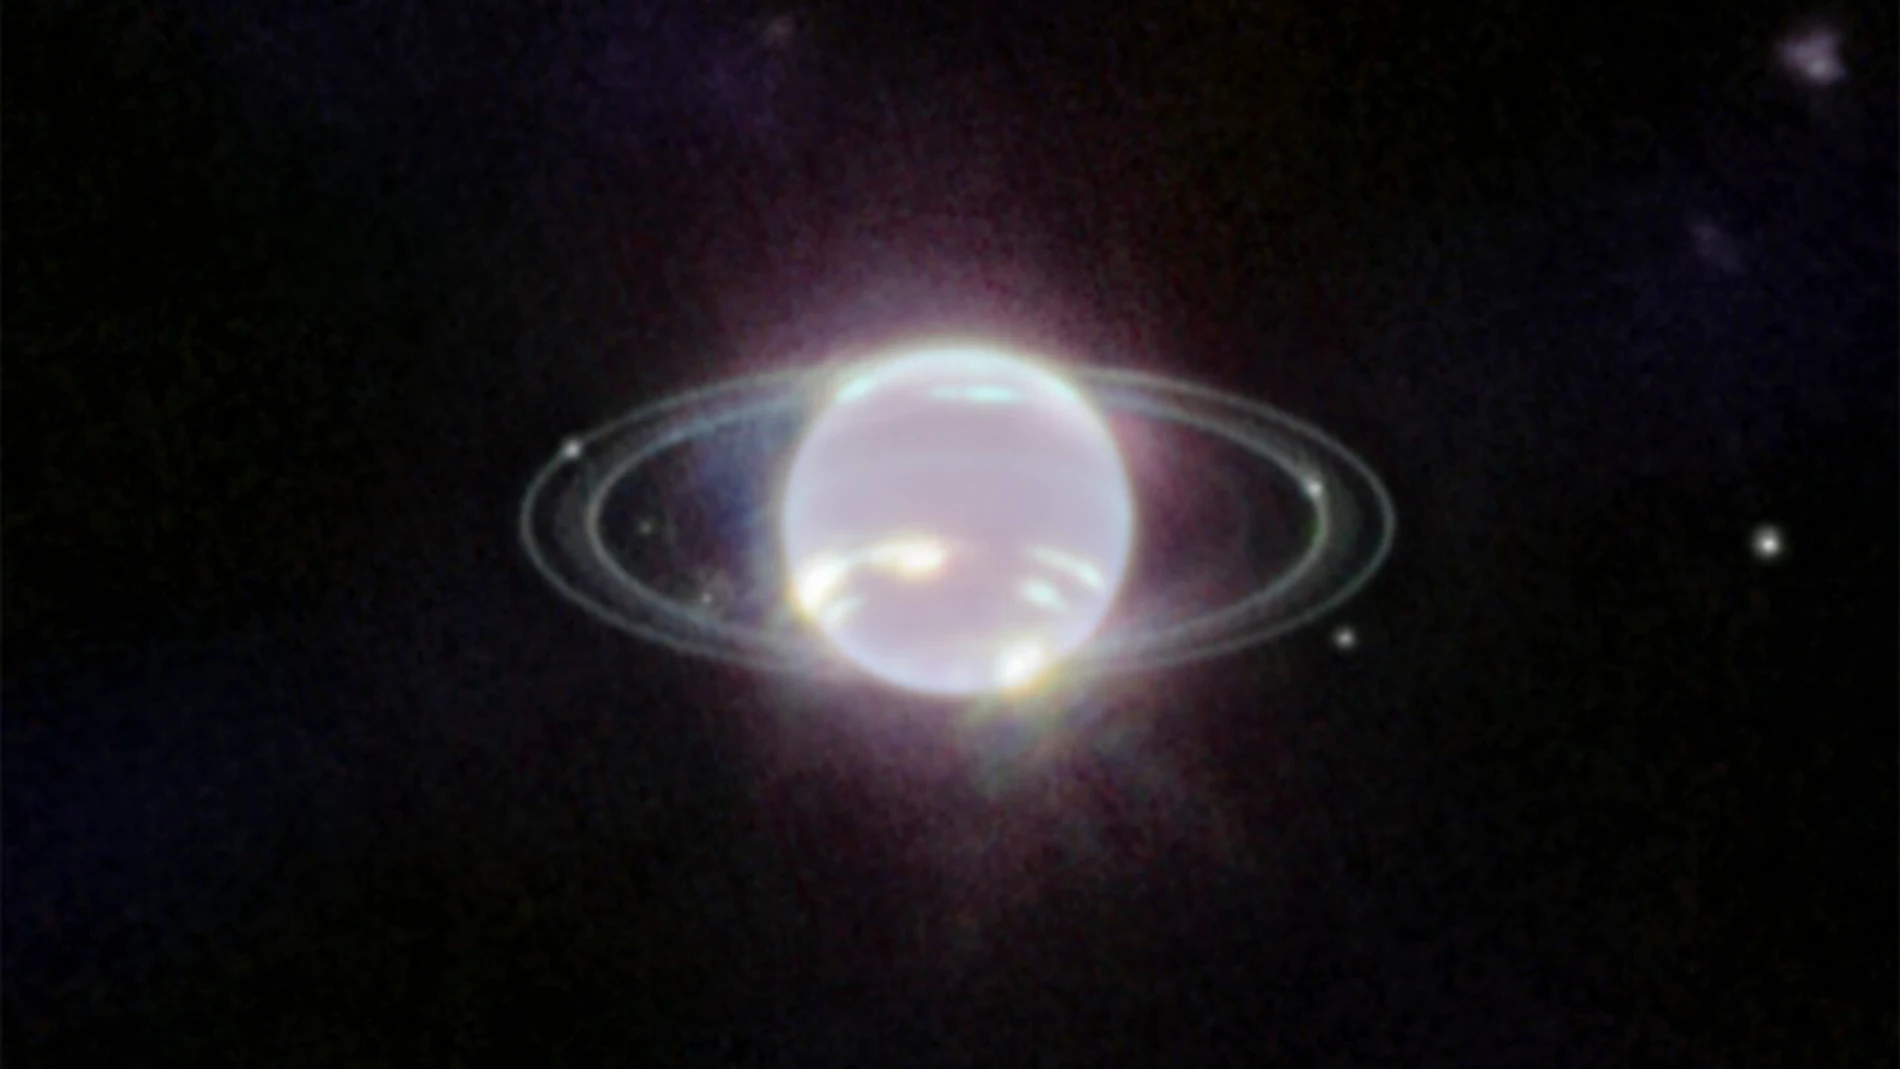 Imagen de Neptuno tomada por la Cámara de Infrarrojo Cercano (NIRCam) del telescopio espacial James Webb